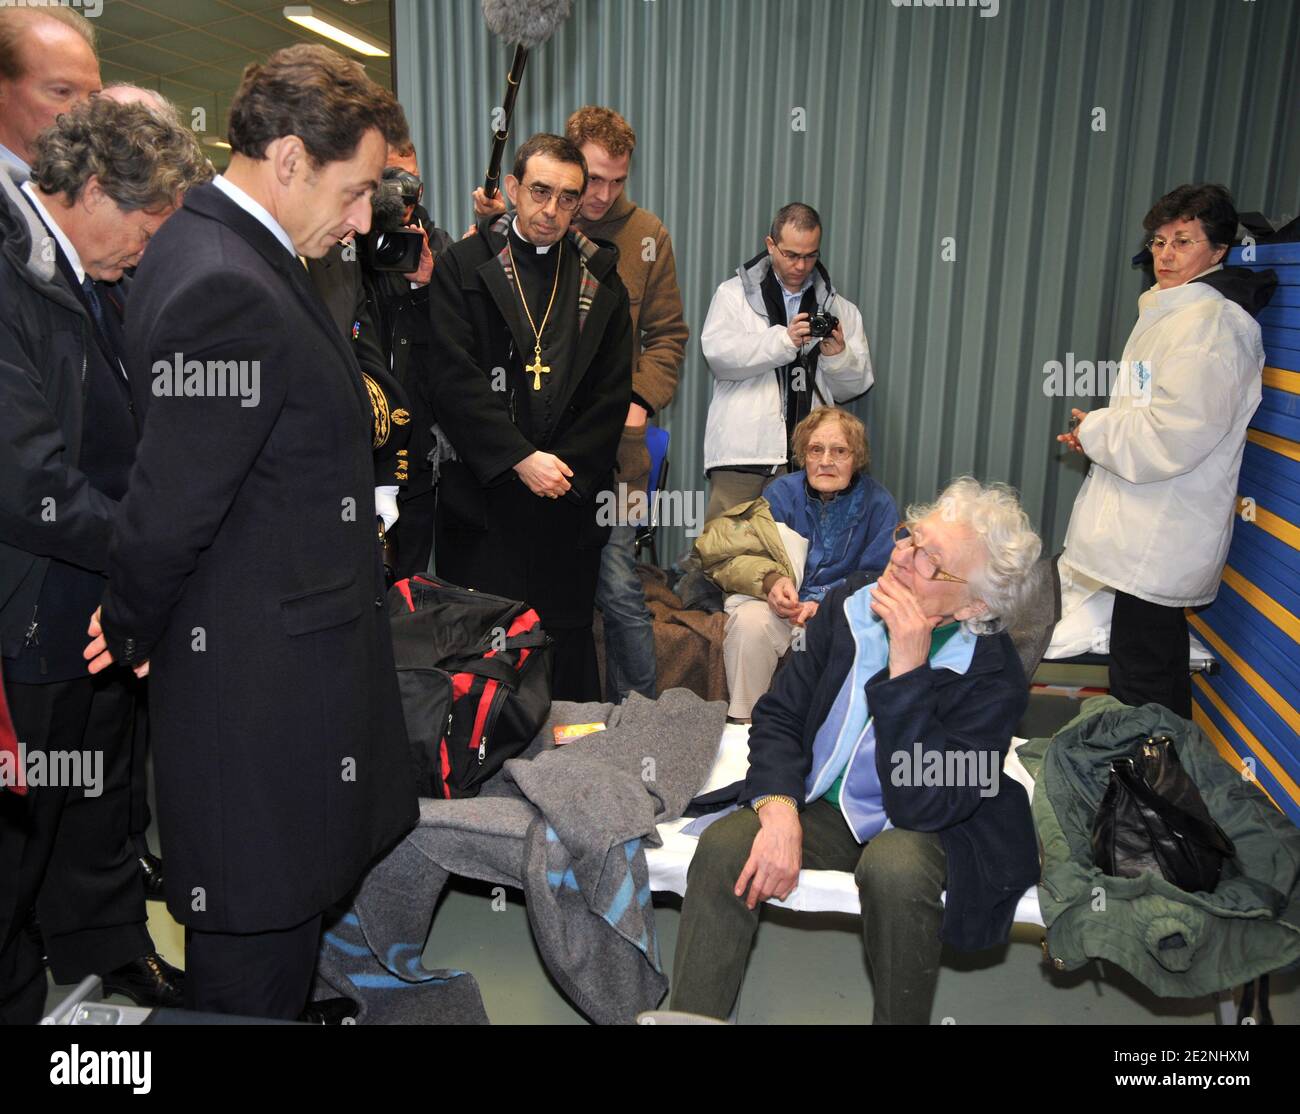 Le président français Nicolas Sarkozy (2ndL), flanqué de la ministre de l'intérieur Brice Hortefeux (L) et du ministre de l'écologie Jean-Louis Borloo (2ndL, partiellement caché), écoute une victime de la tempête Xynthia, abritée dans une école de l'Aiguillon-sur-Mer, dans l'ouest de la France, le 1er mars, 2010 après avoir survolé les zones inondées entre la Rochelle et l'Aiguillon-sur-Mer. Xynthia a frappé cette partie de la côte atlantique la veille, tuant au moins 50 personnes, faisant des vagues énormes dans les villes exposées, inondant des centaines de maisons. Bussereau est président du conseil général de la Charente-Maritime, près de Vendée Banque D'Images